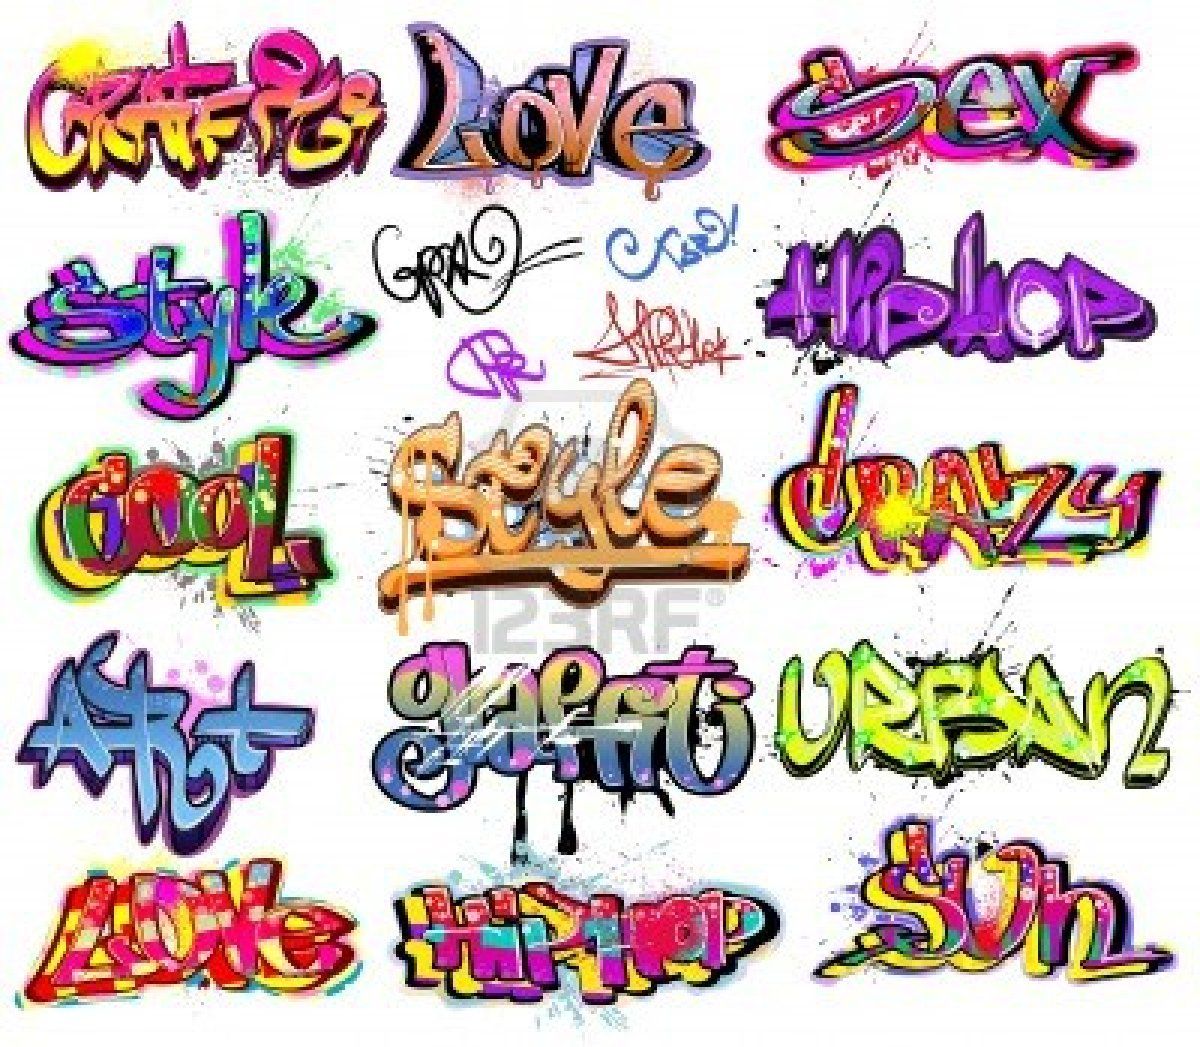 Graffiti Words - KibrisPDR